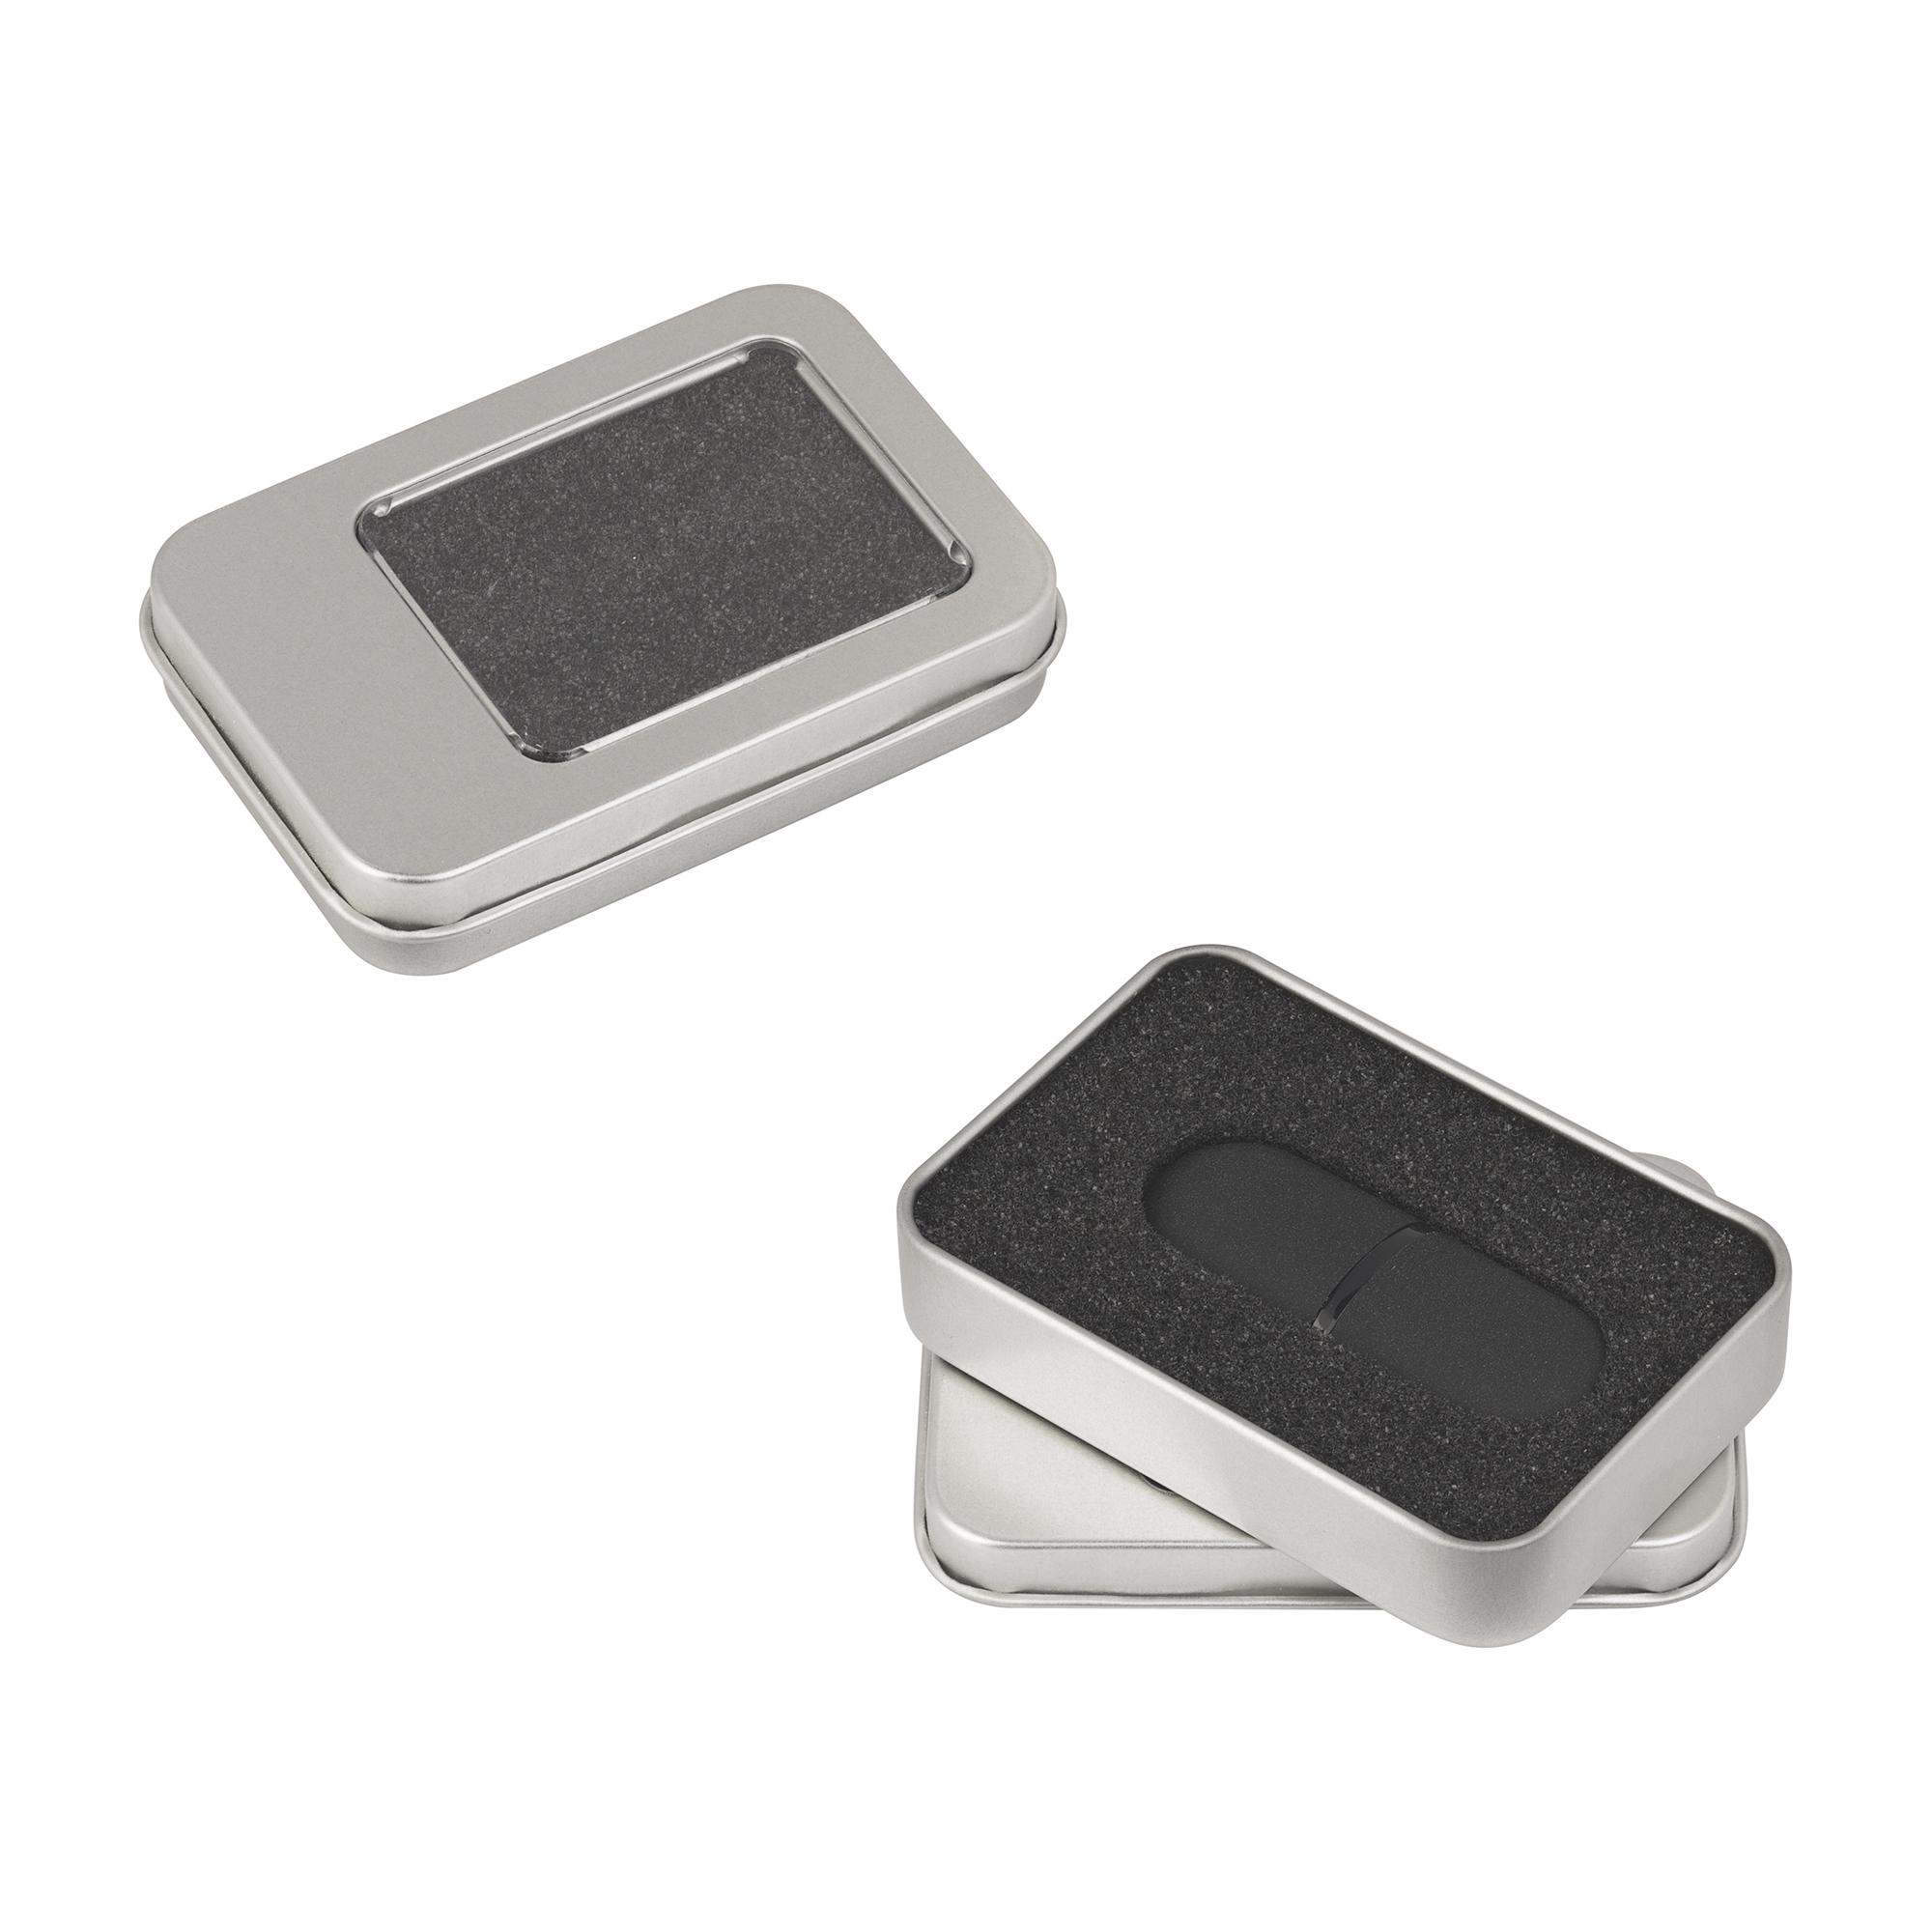 Флеш-карта "Камень" с покрытием soft grip в футляре, объем памяти 16GB, цвет черный, фото 1